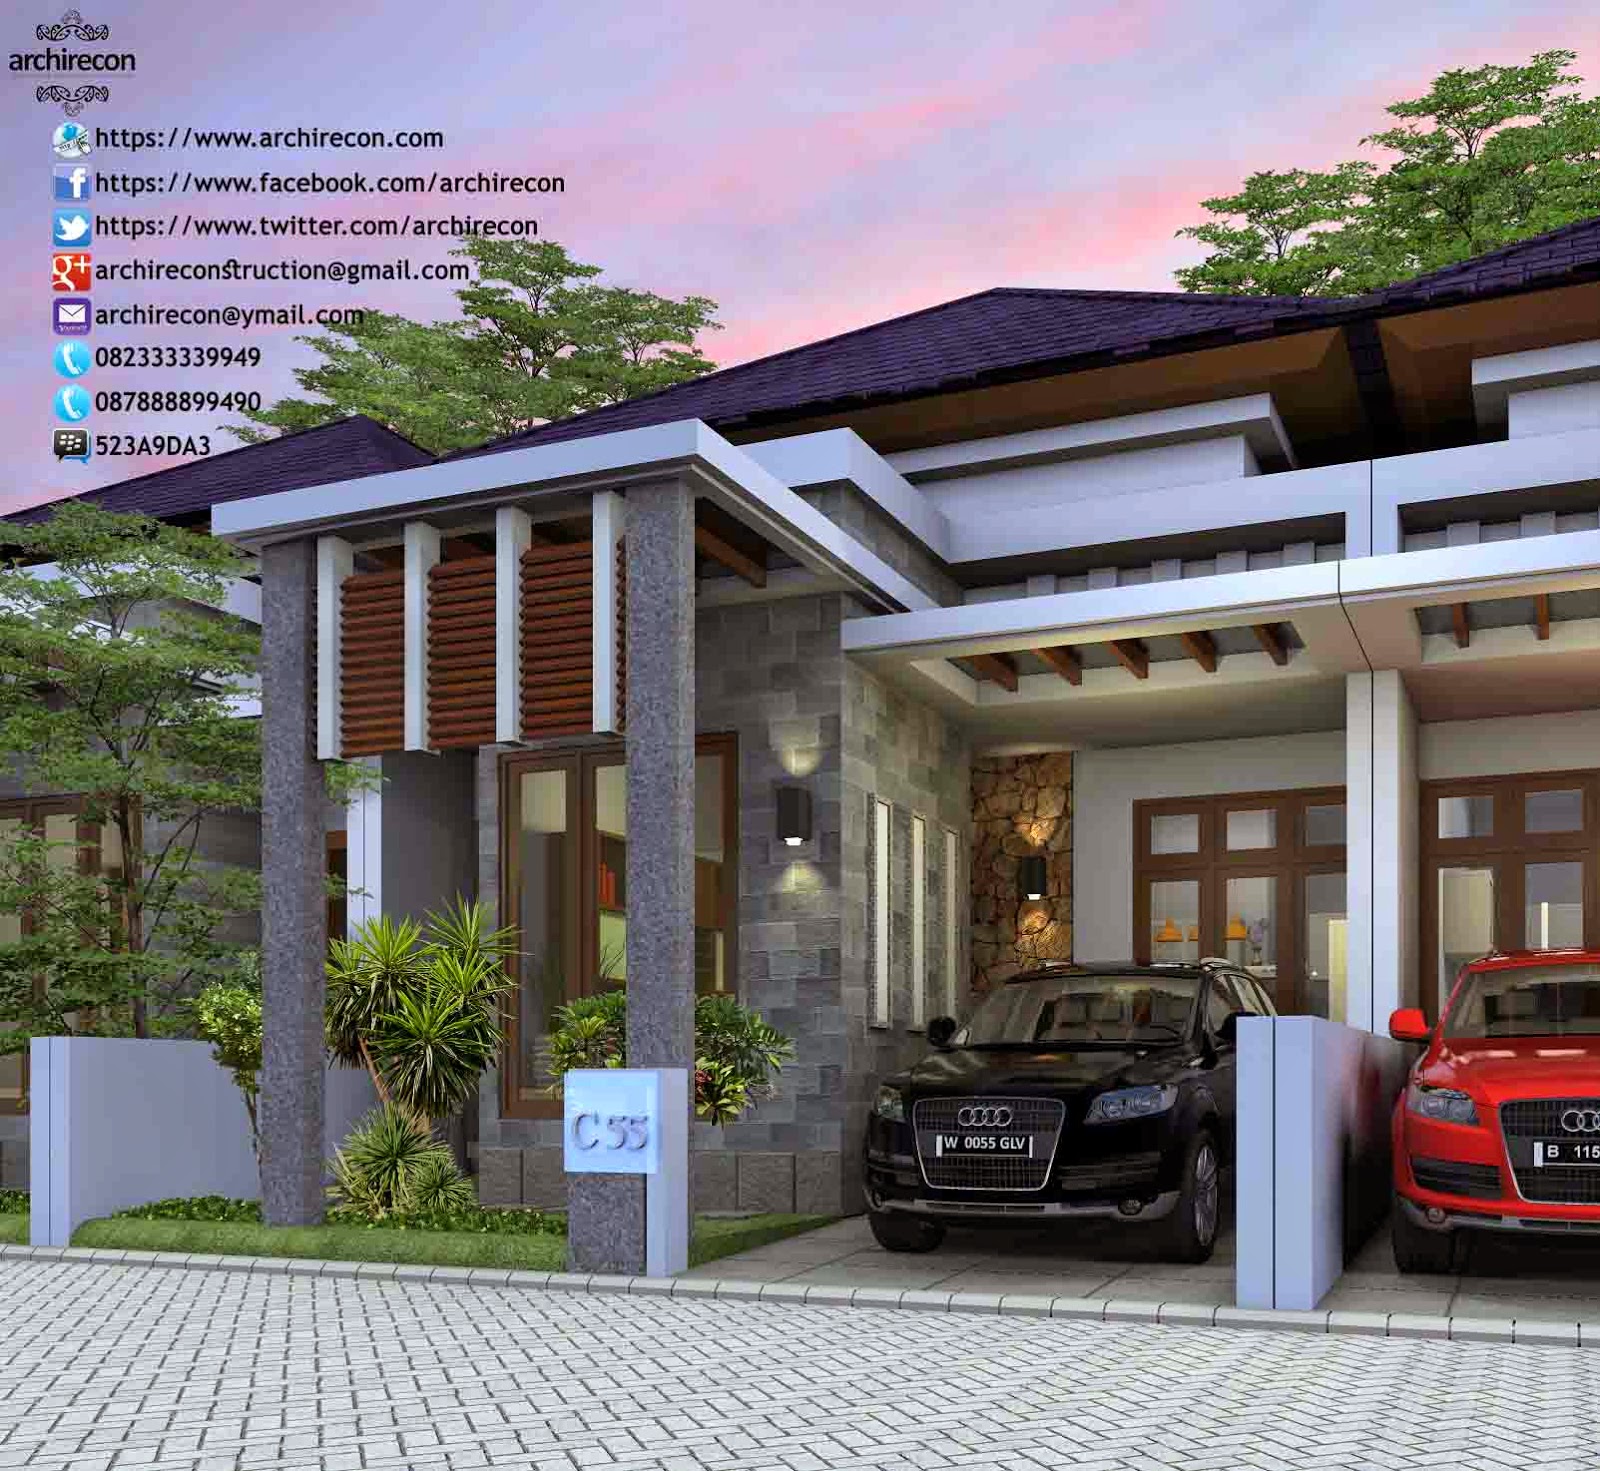 Jasa Desain Interior Rumah Di Palembang 082333339949 Archirecon